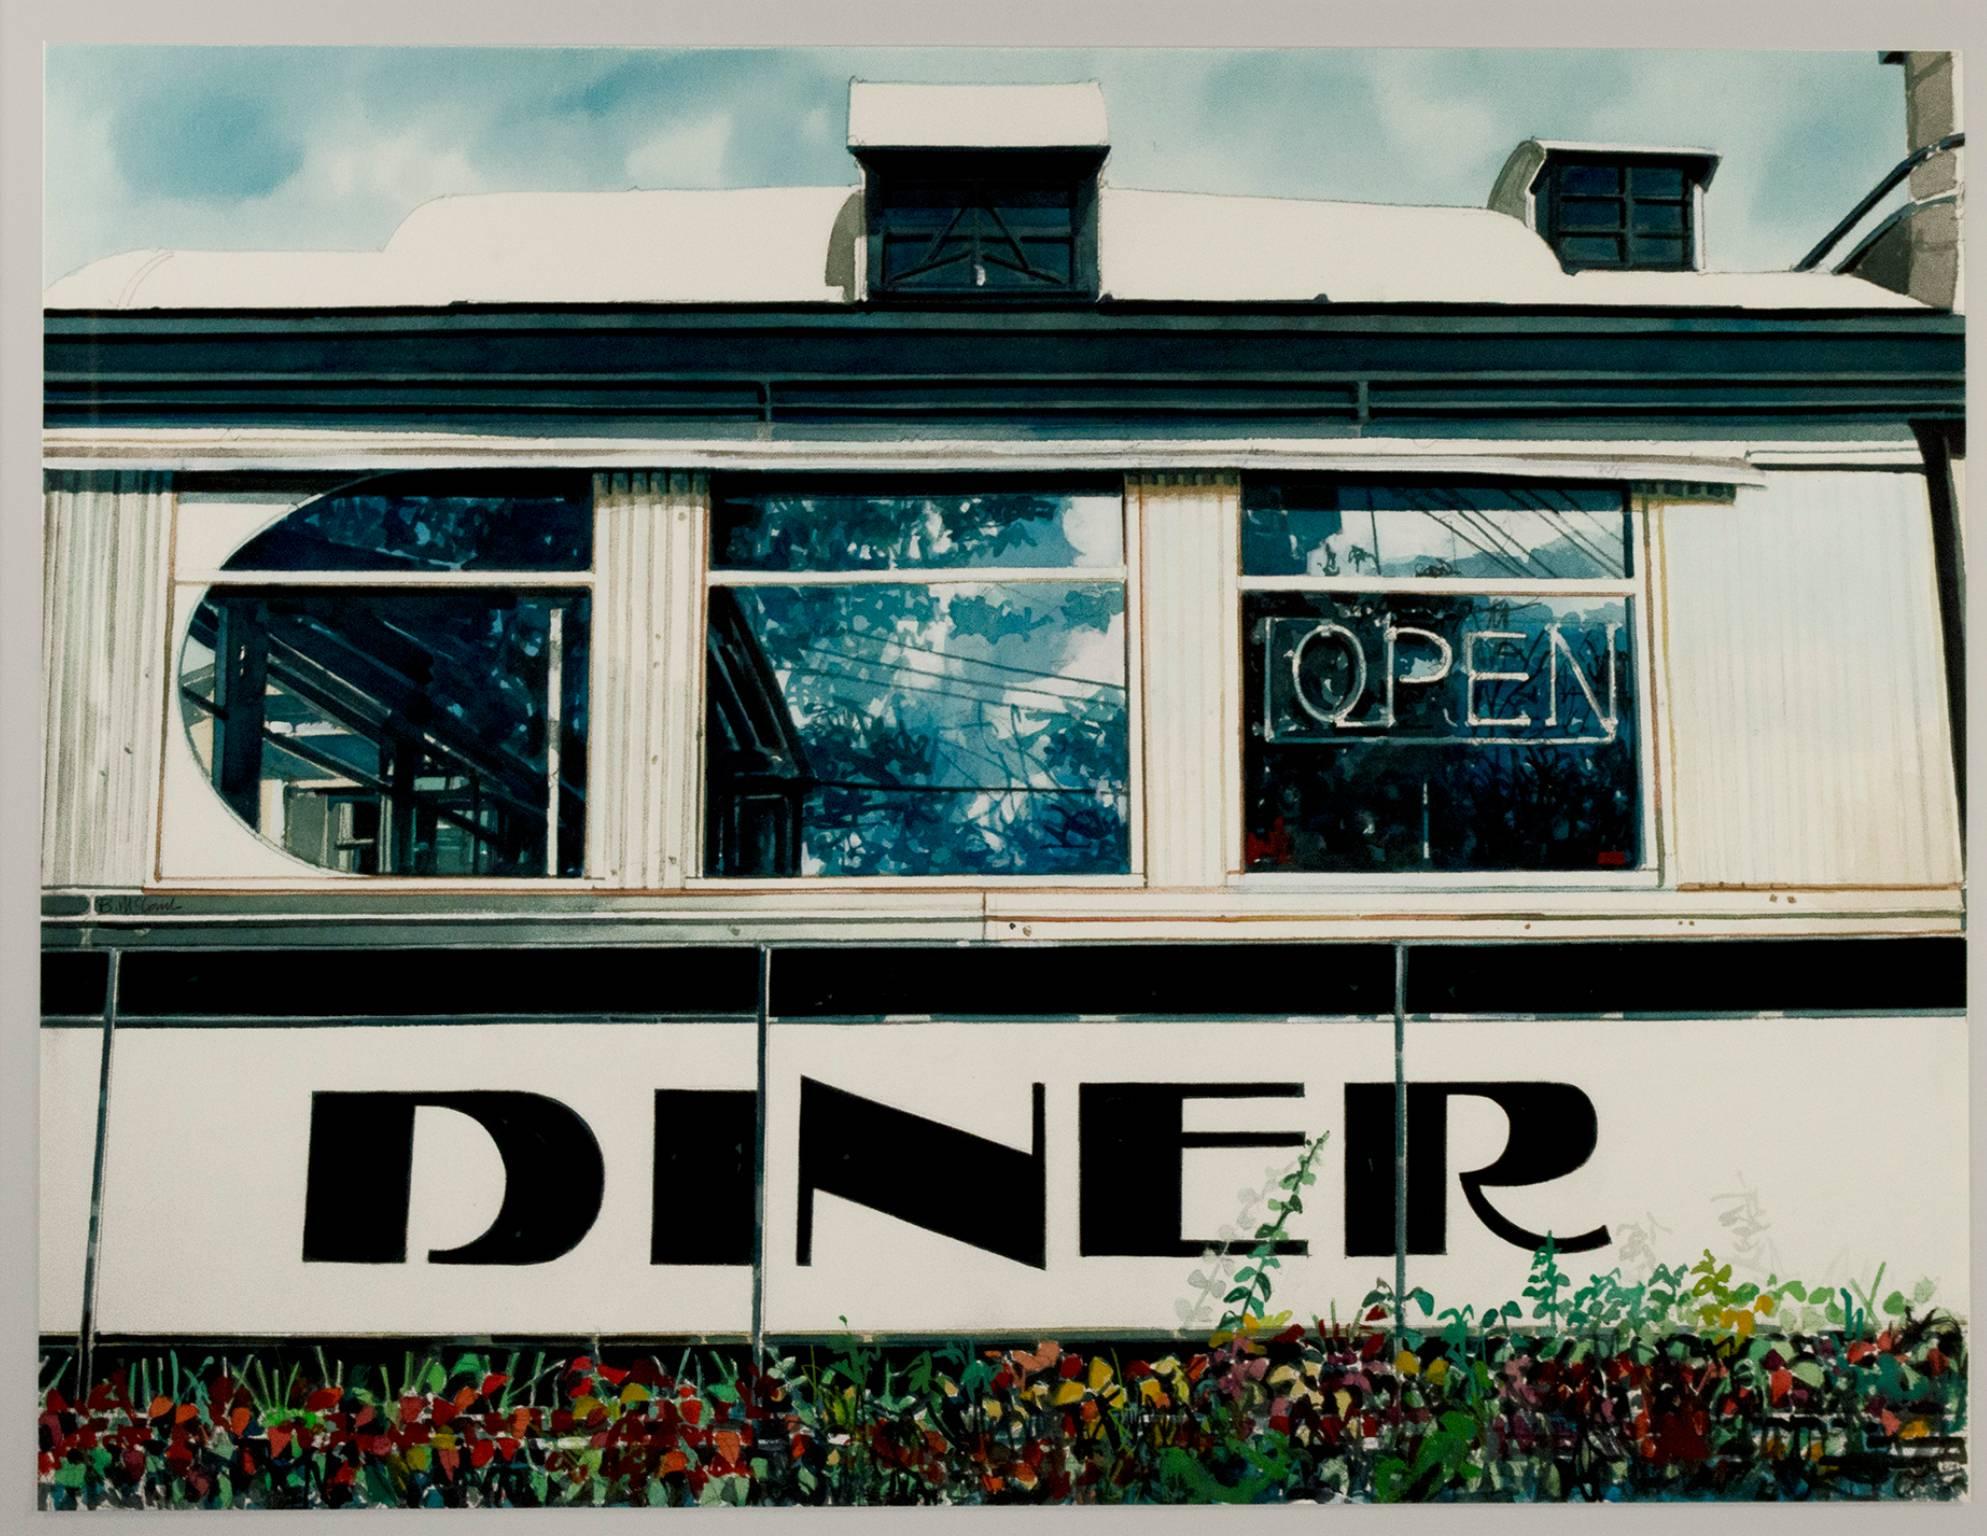 "Diner" ist ein original signiertes Aquarell von Bruce McCombs. Es stellt die Fassade eines Diners dar, wobei auf Reflexion, Atmosphäre und Licht geachtet wurde. 

22" x 29 1/2" Kunst
25" x 32 1/2" gerahmt

Statement des Künstlers: "Seit den frühen